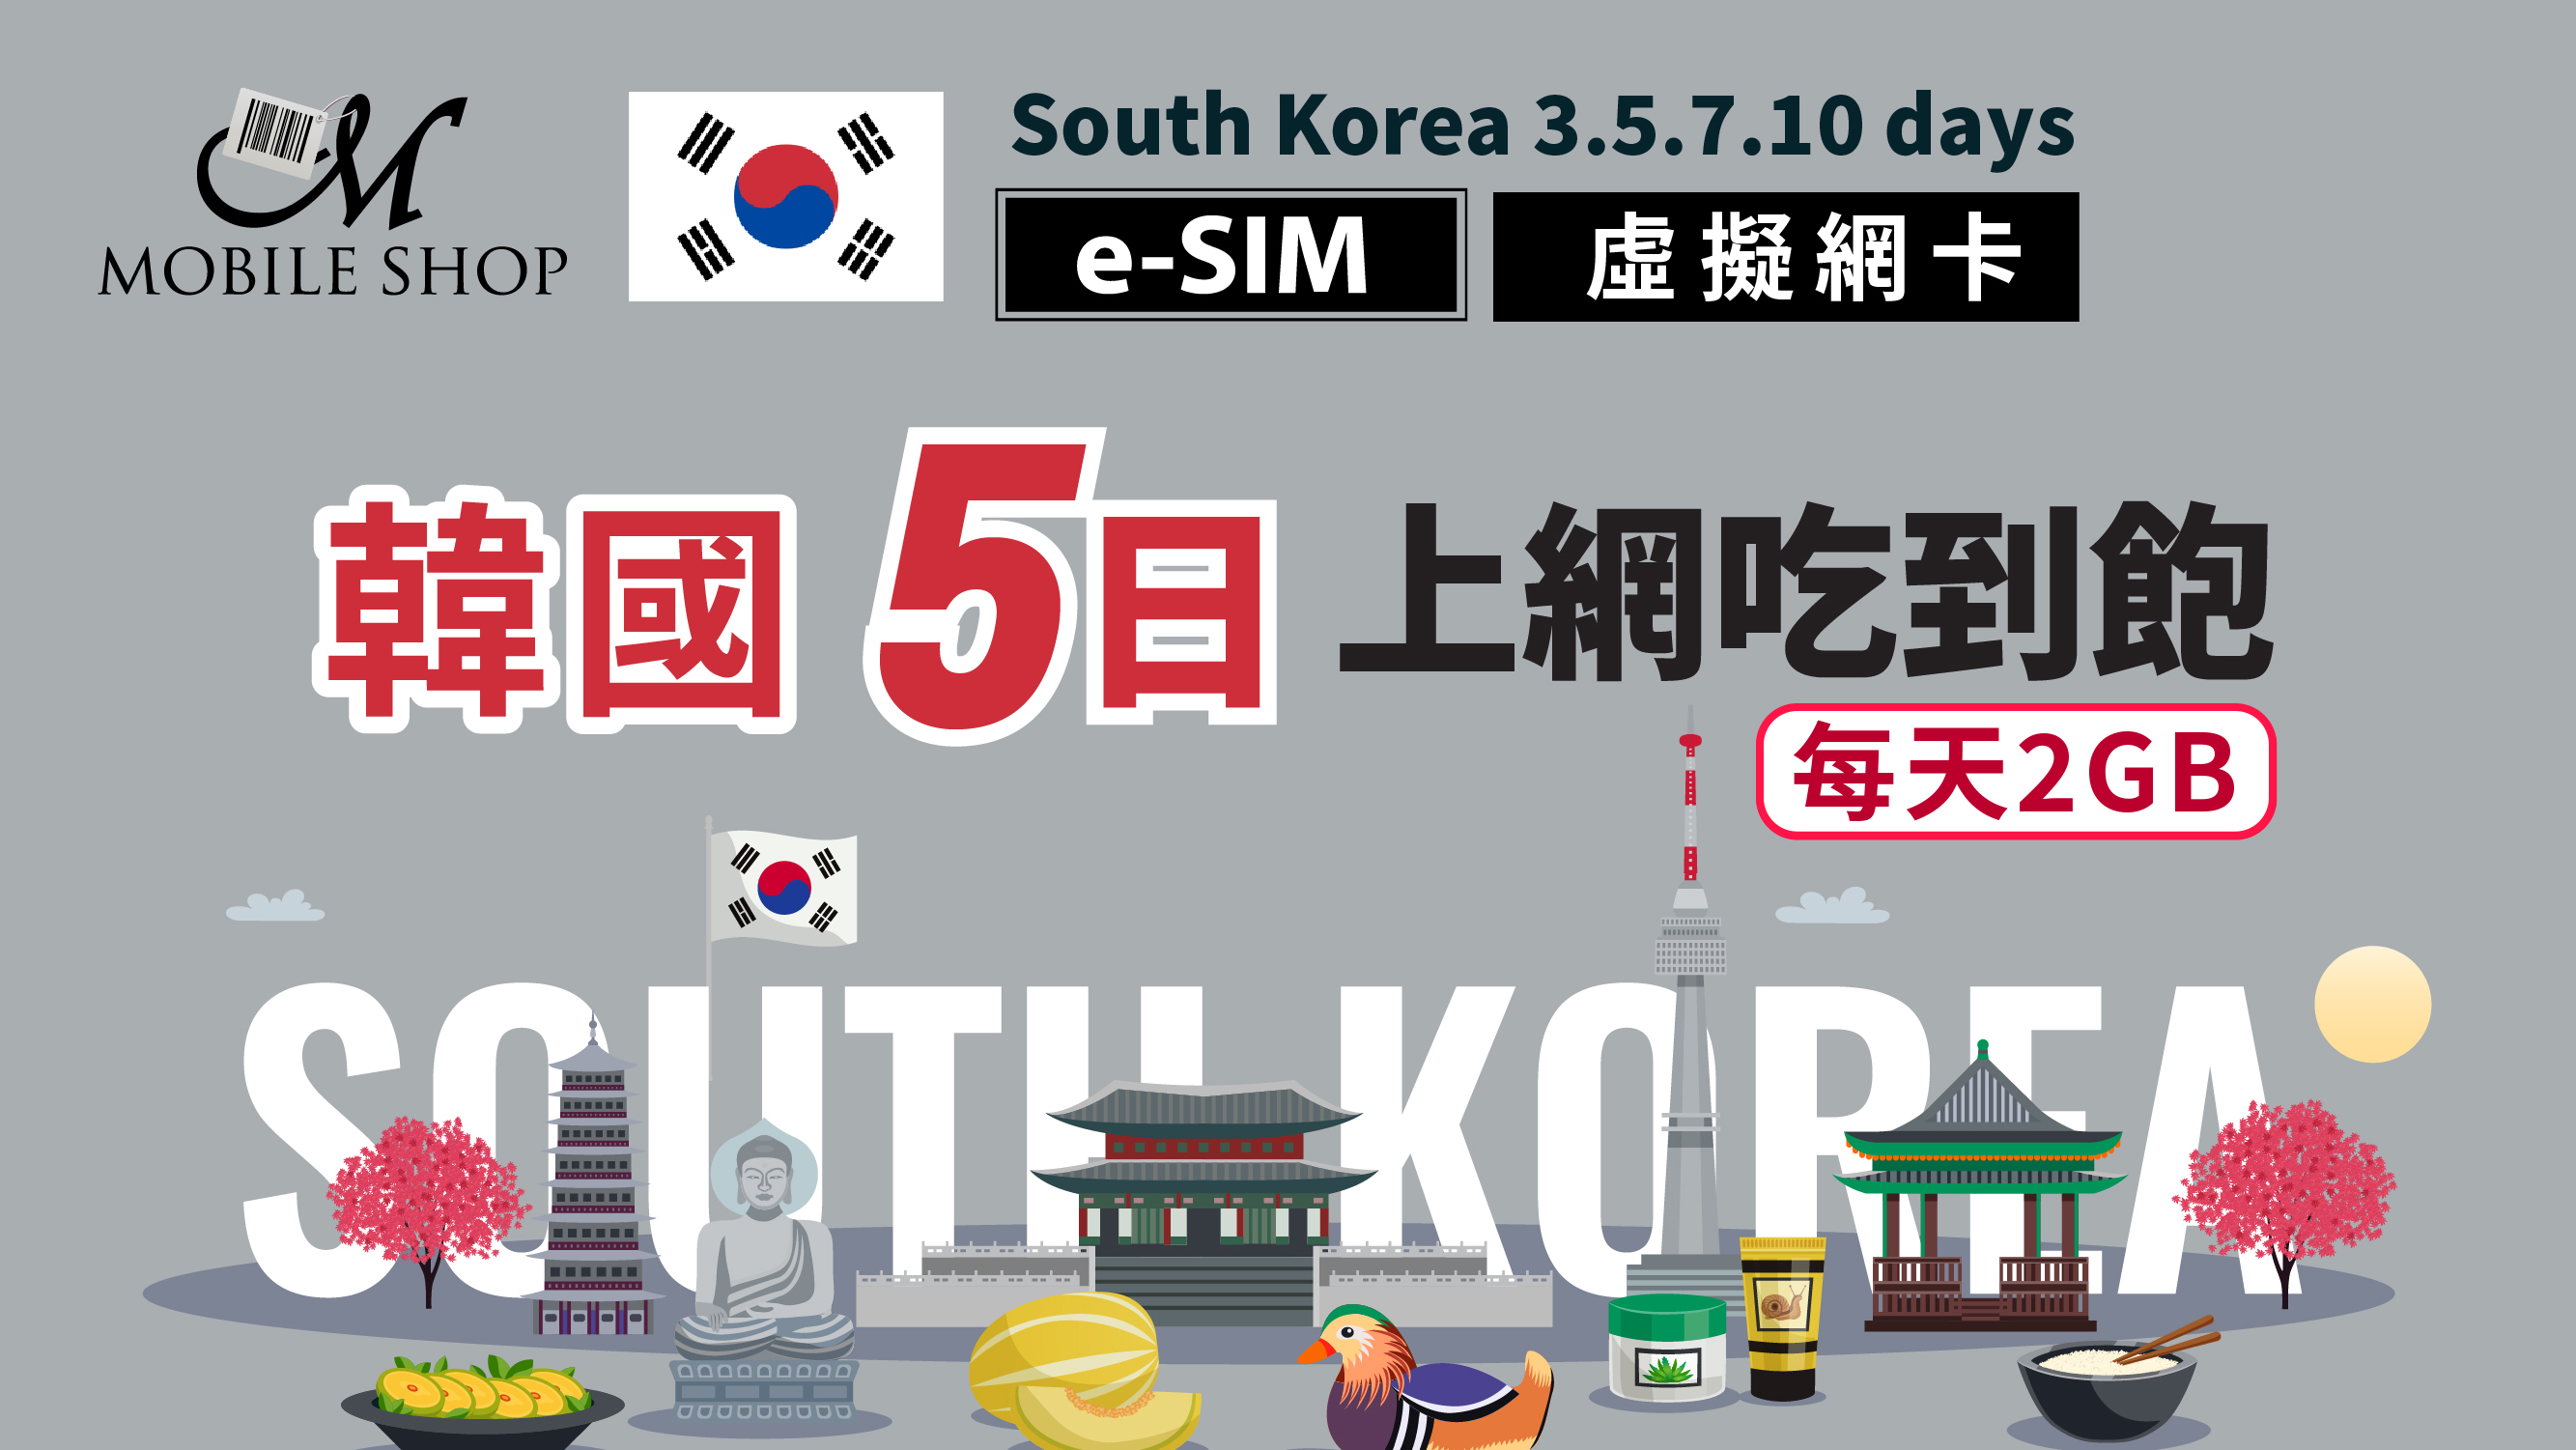 eSIM Korea 5days/2GB day unlimited data